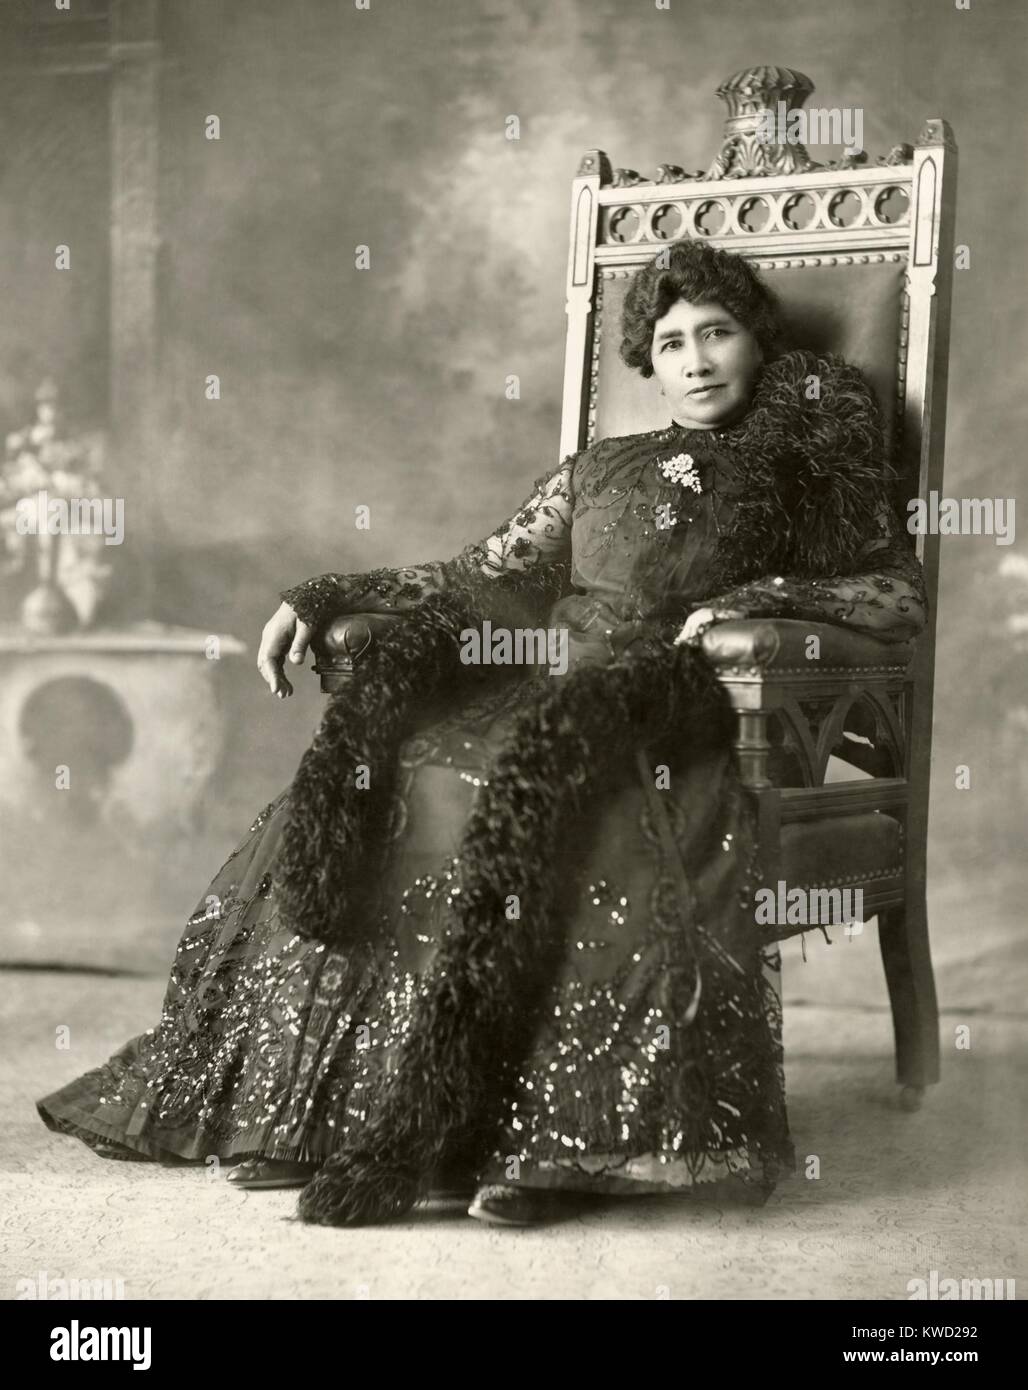 La principessa Liliuokalani seduto in una sedia coronato che ha segnato il suo posto nel palazzo sala da pranzo, c. 1880 (BSLOC_2017_20_58) Foto Stock